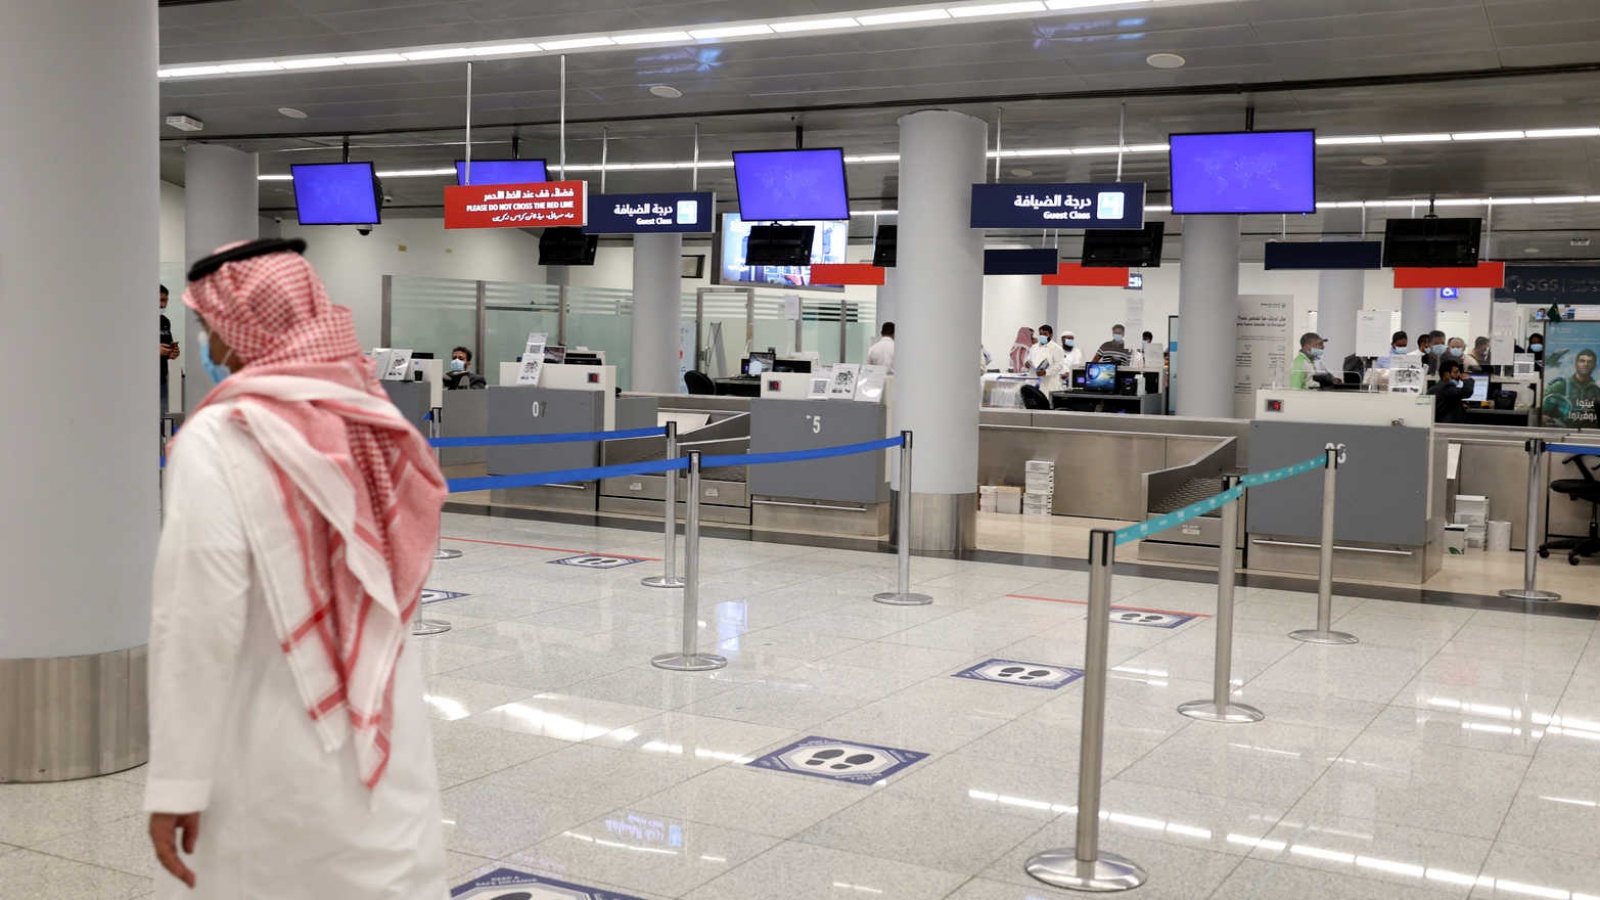 صورة من مطار الملك خالد الدولي في الرياض تظهر حركة خفيفة جدًّا في ظل قيود كورونا التي فرضتها المملكة العربية السعودية. (أرشيفية)